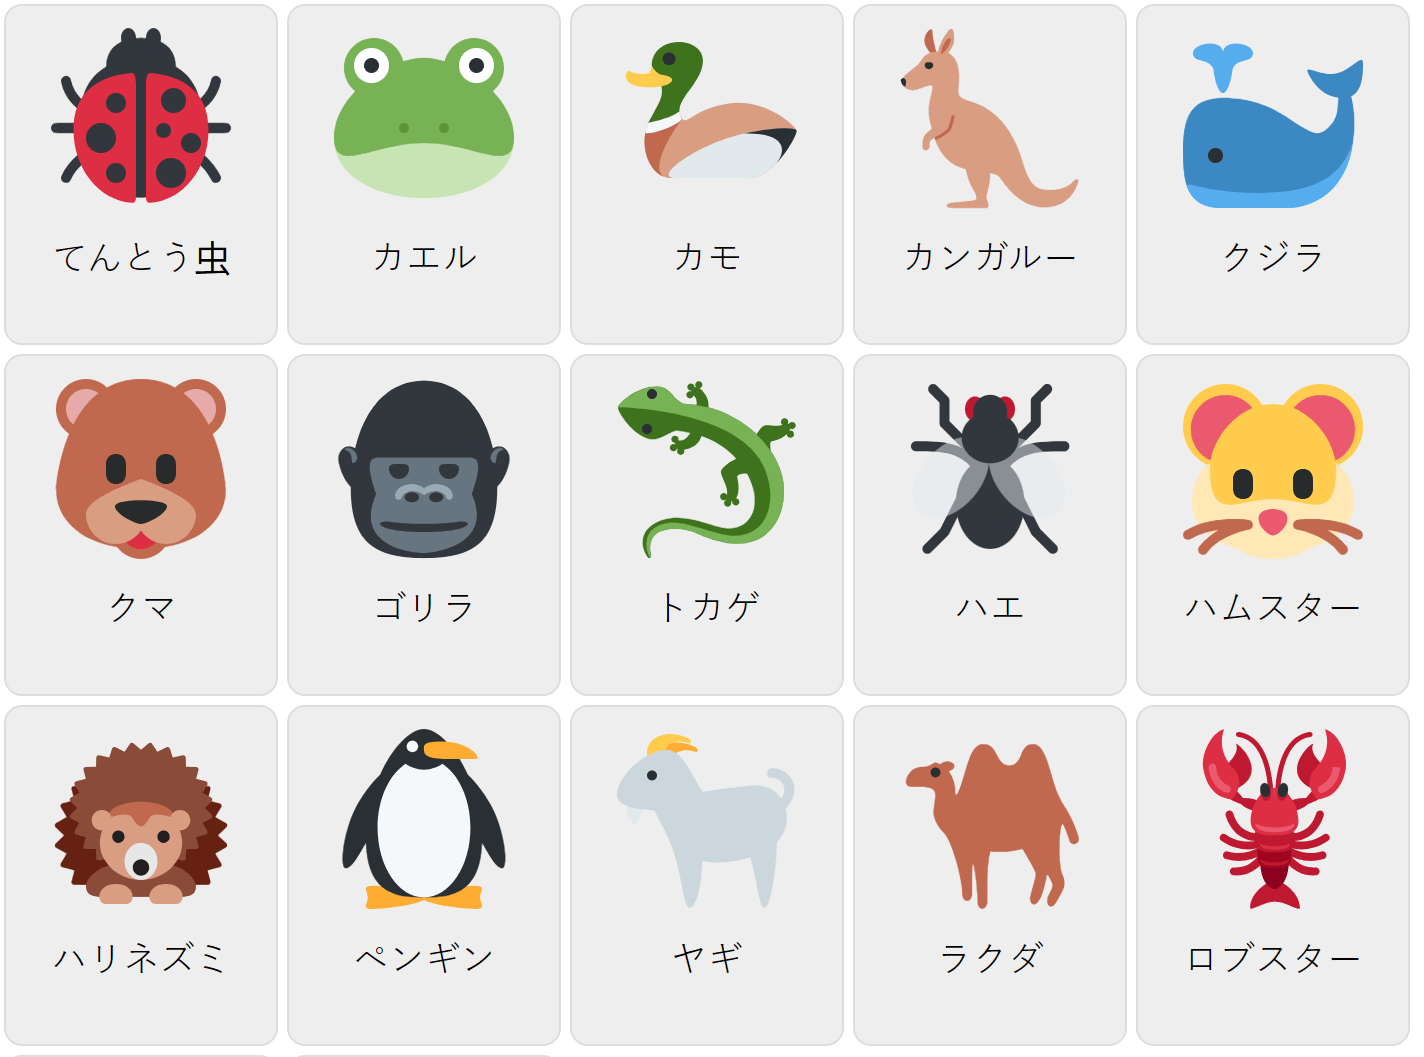 Djur på japanska 2